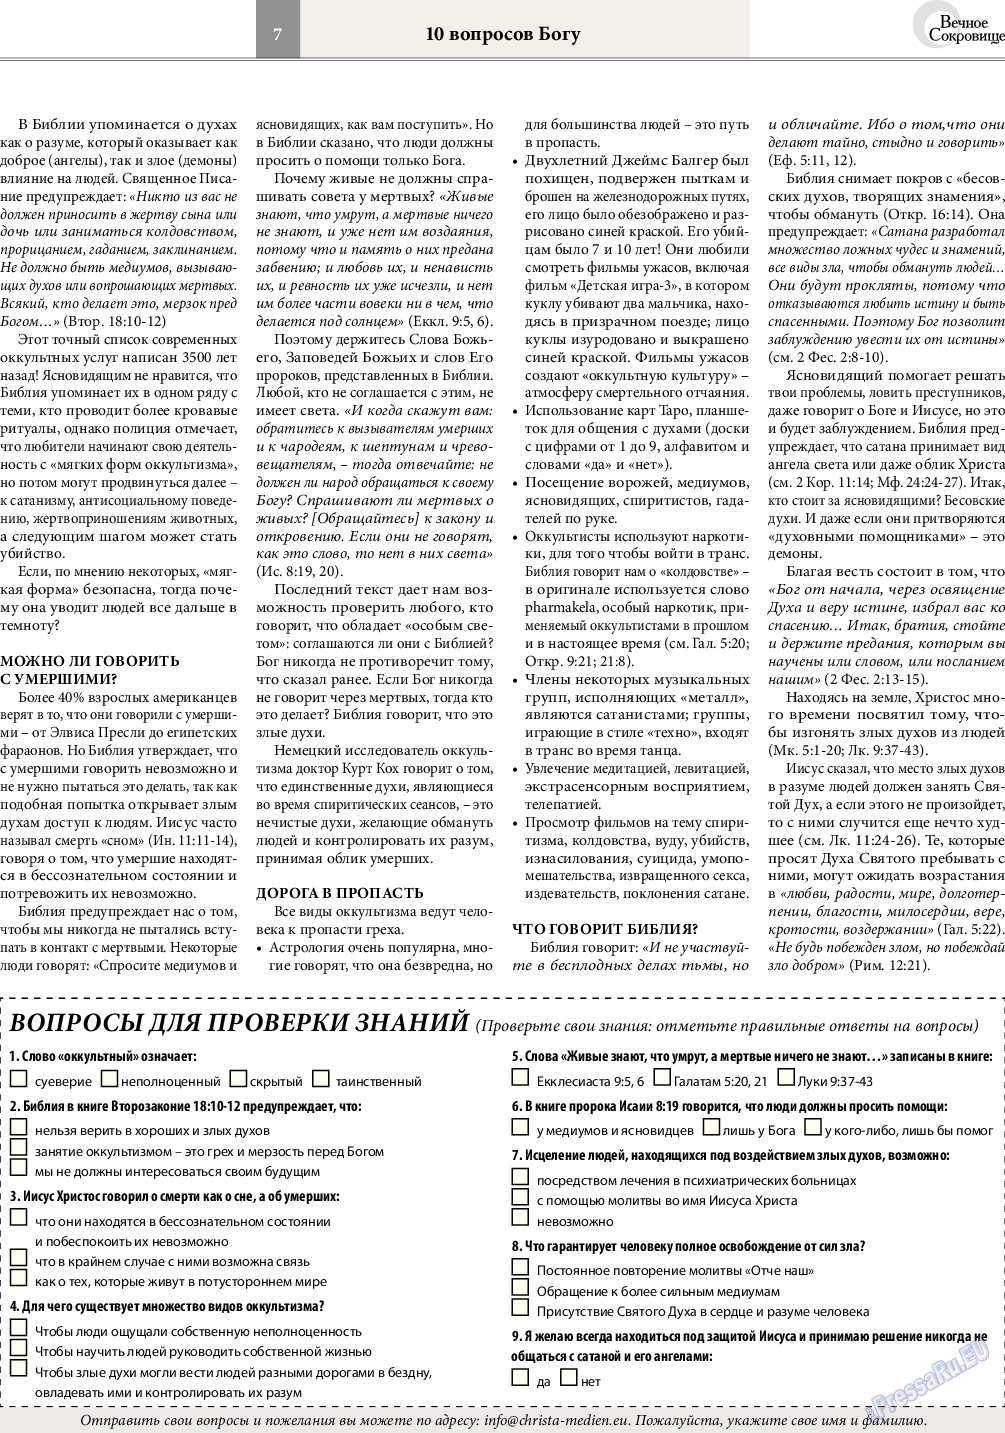 Вечное сокровище, газета. 2015 №3 стр.7